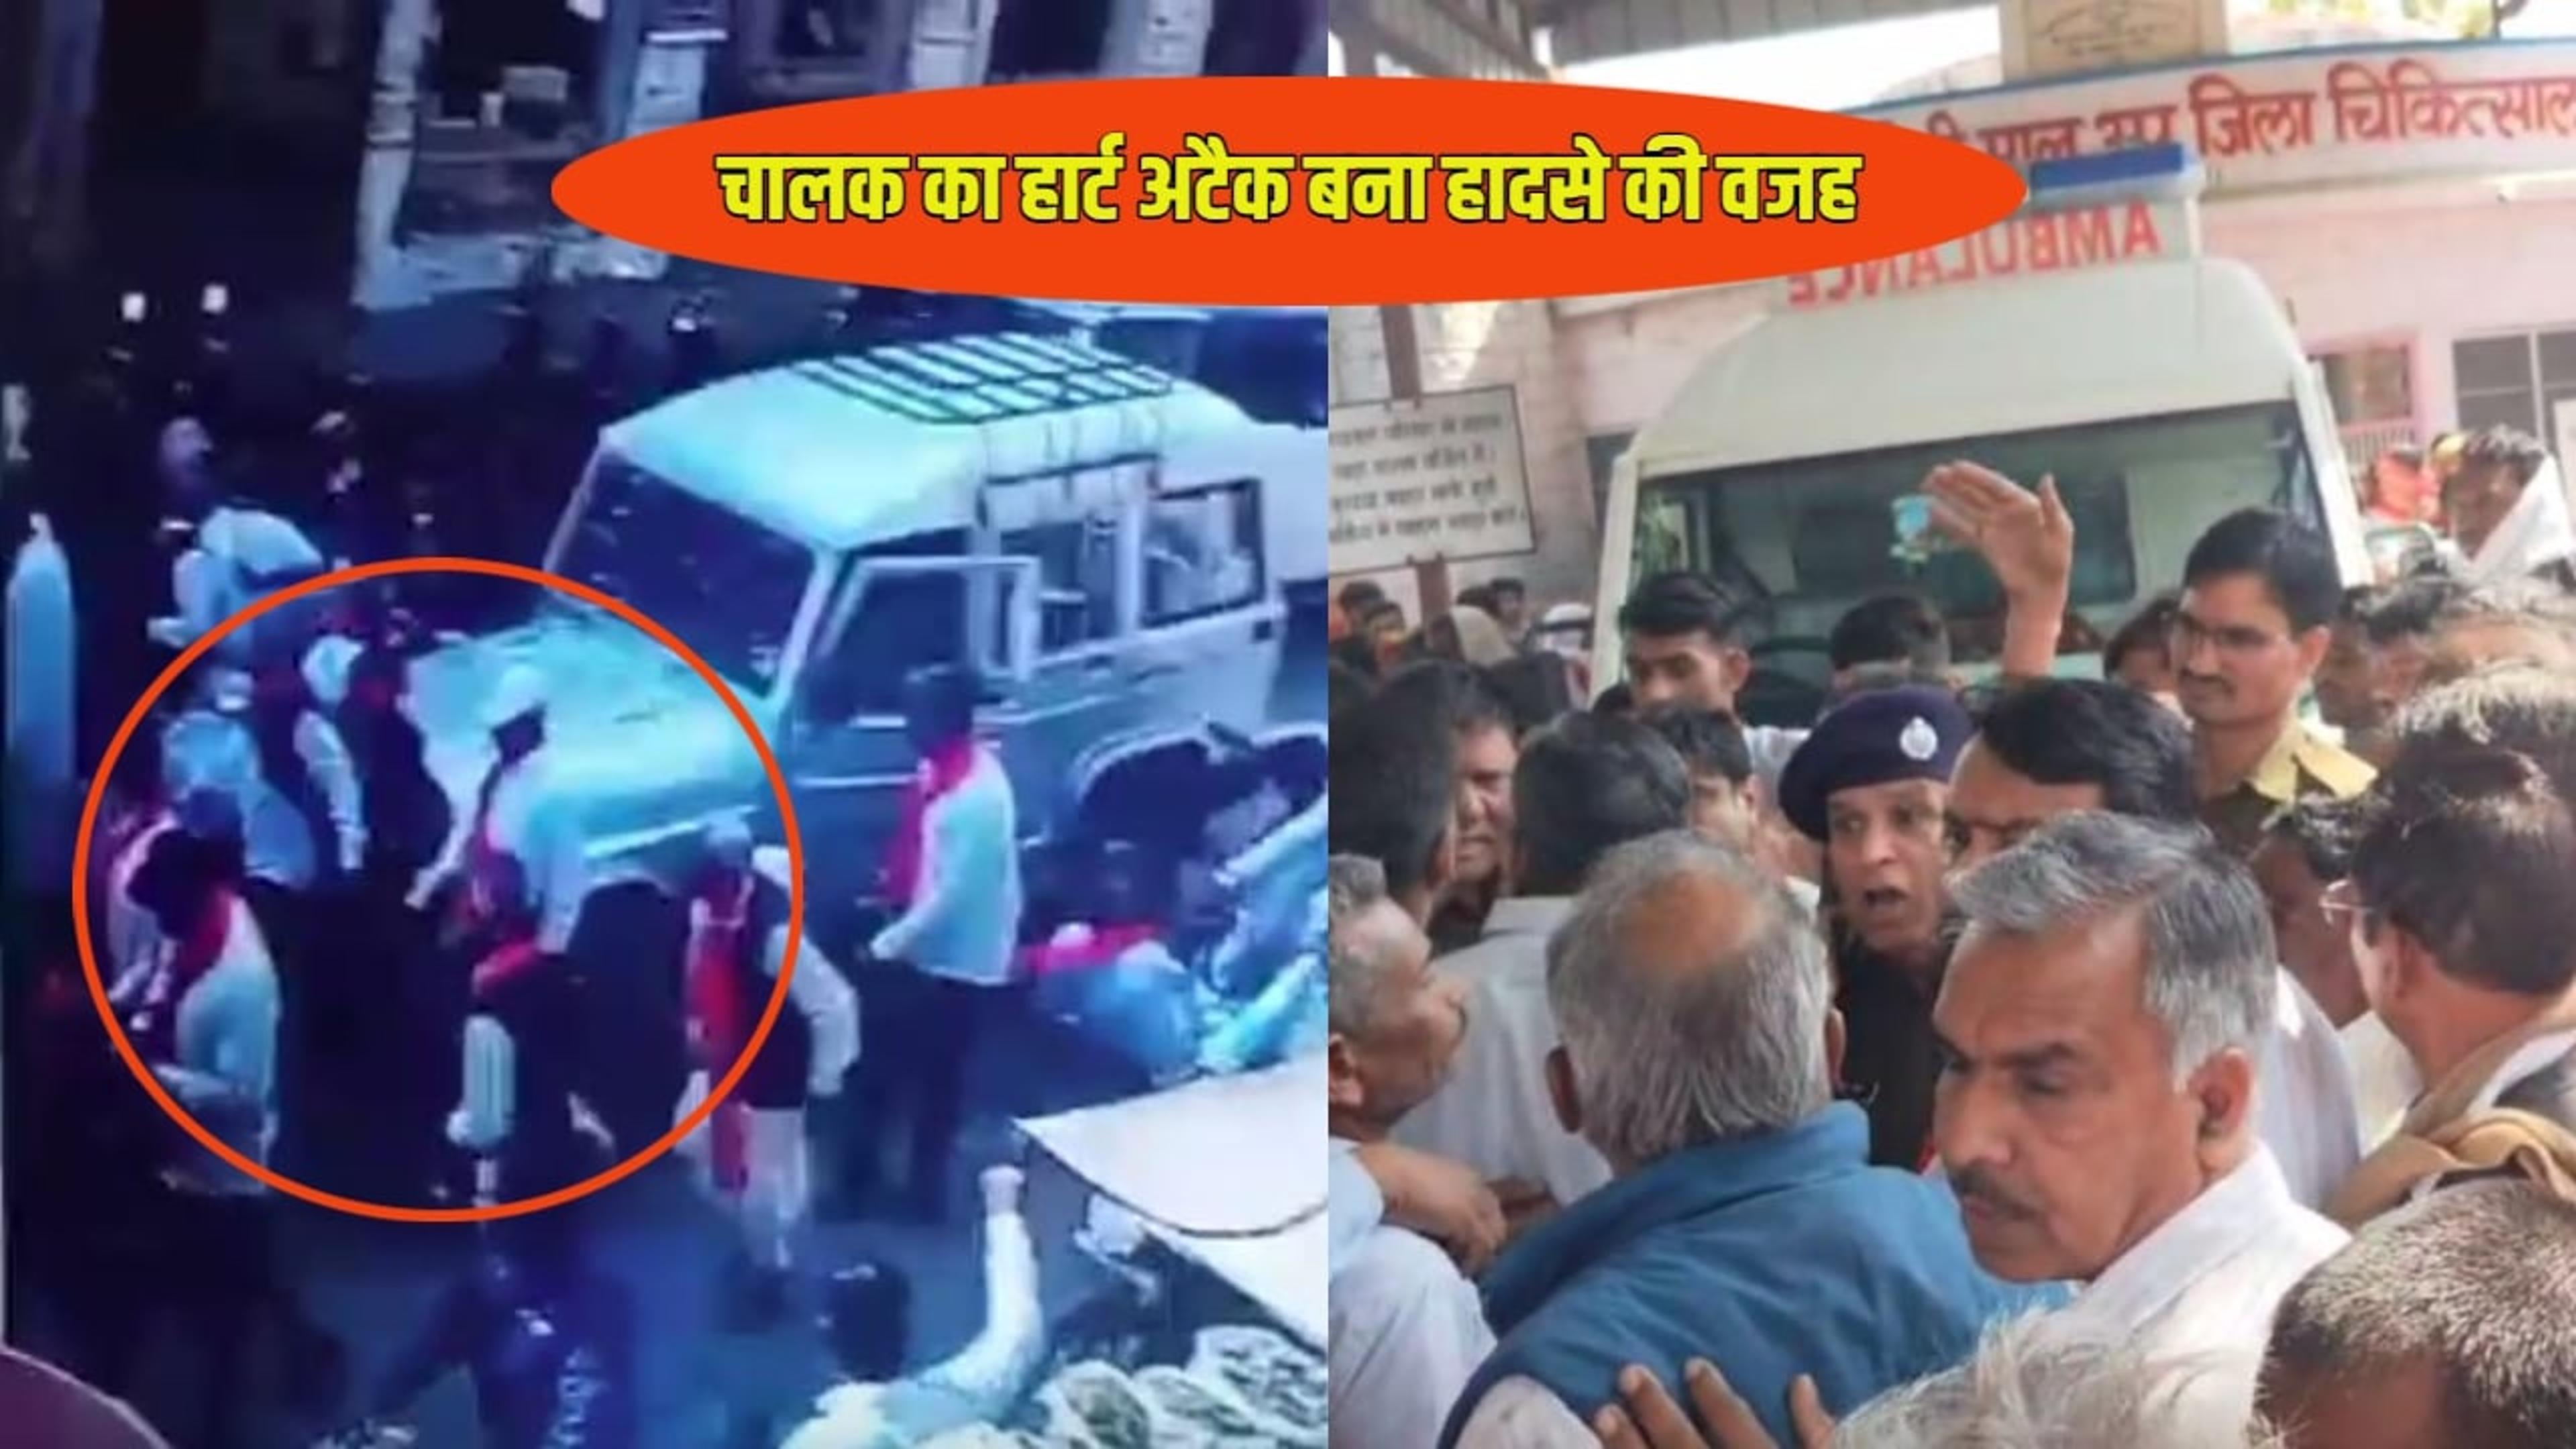 राजस्थान में बड़ा हादसा: चालक को आया हार्ट अटैक, शोभायात्रा में शामिल 8 लोगों को कुचला